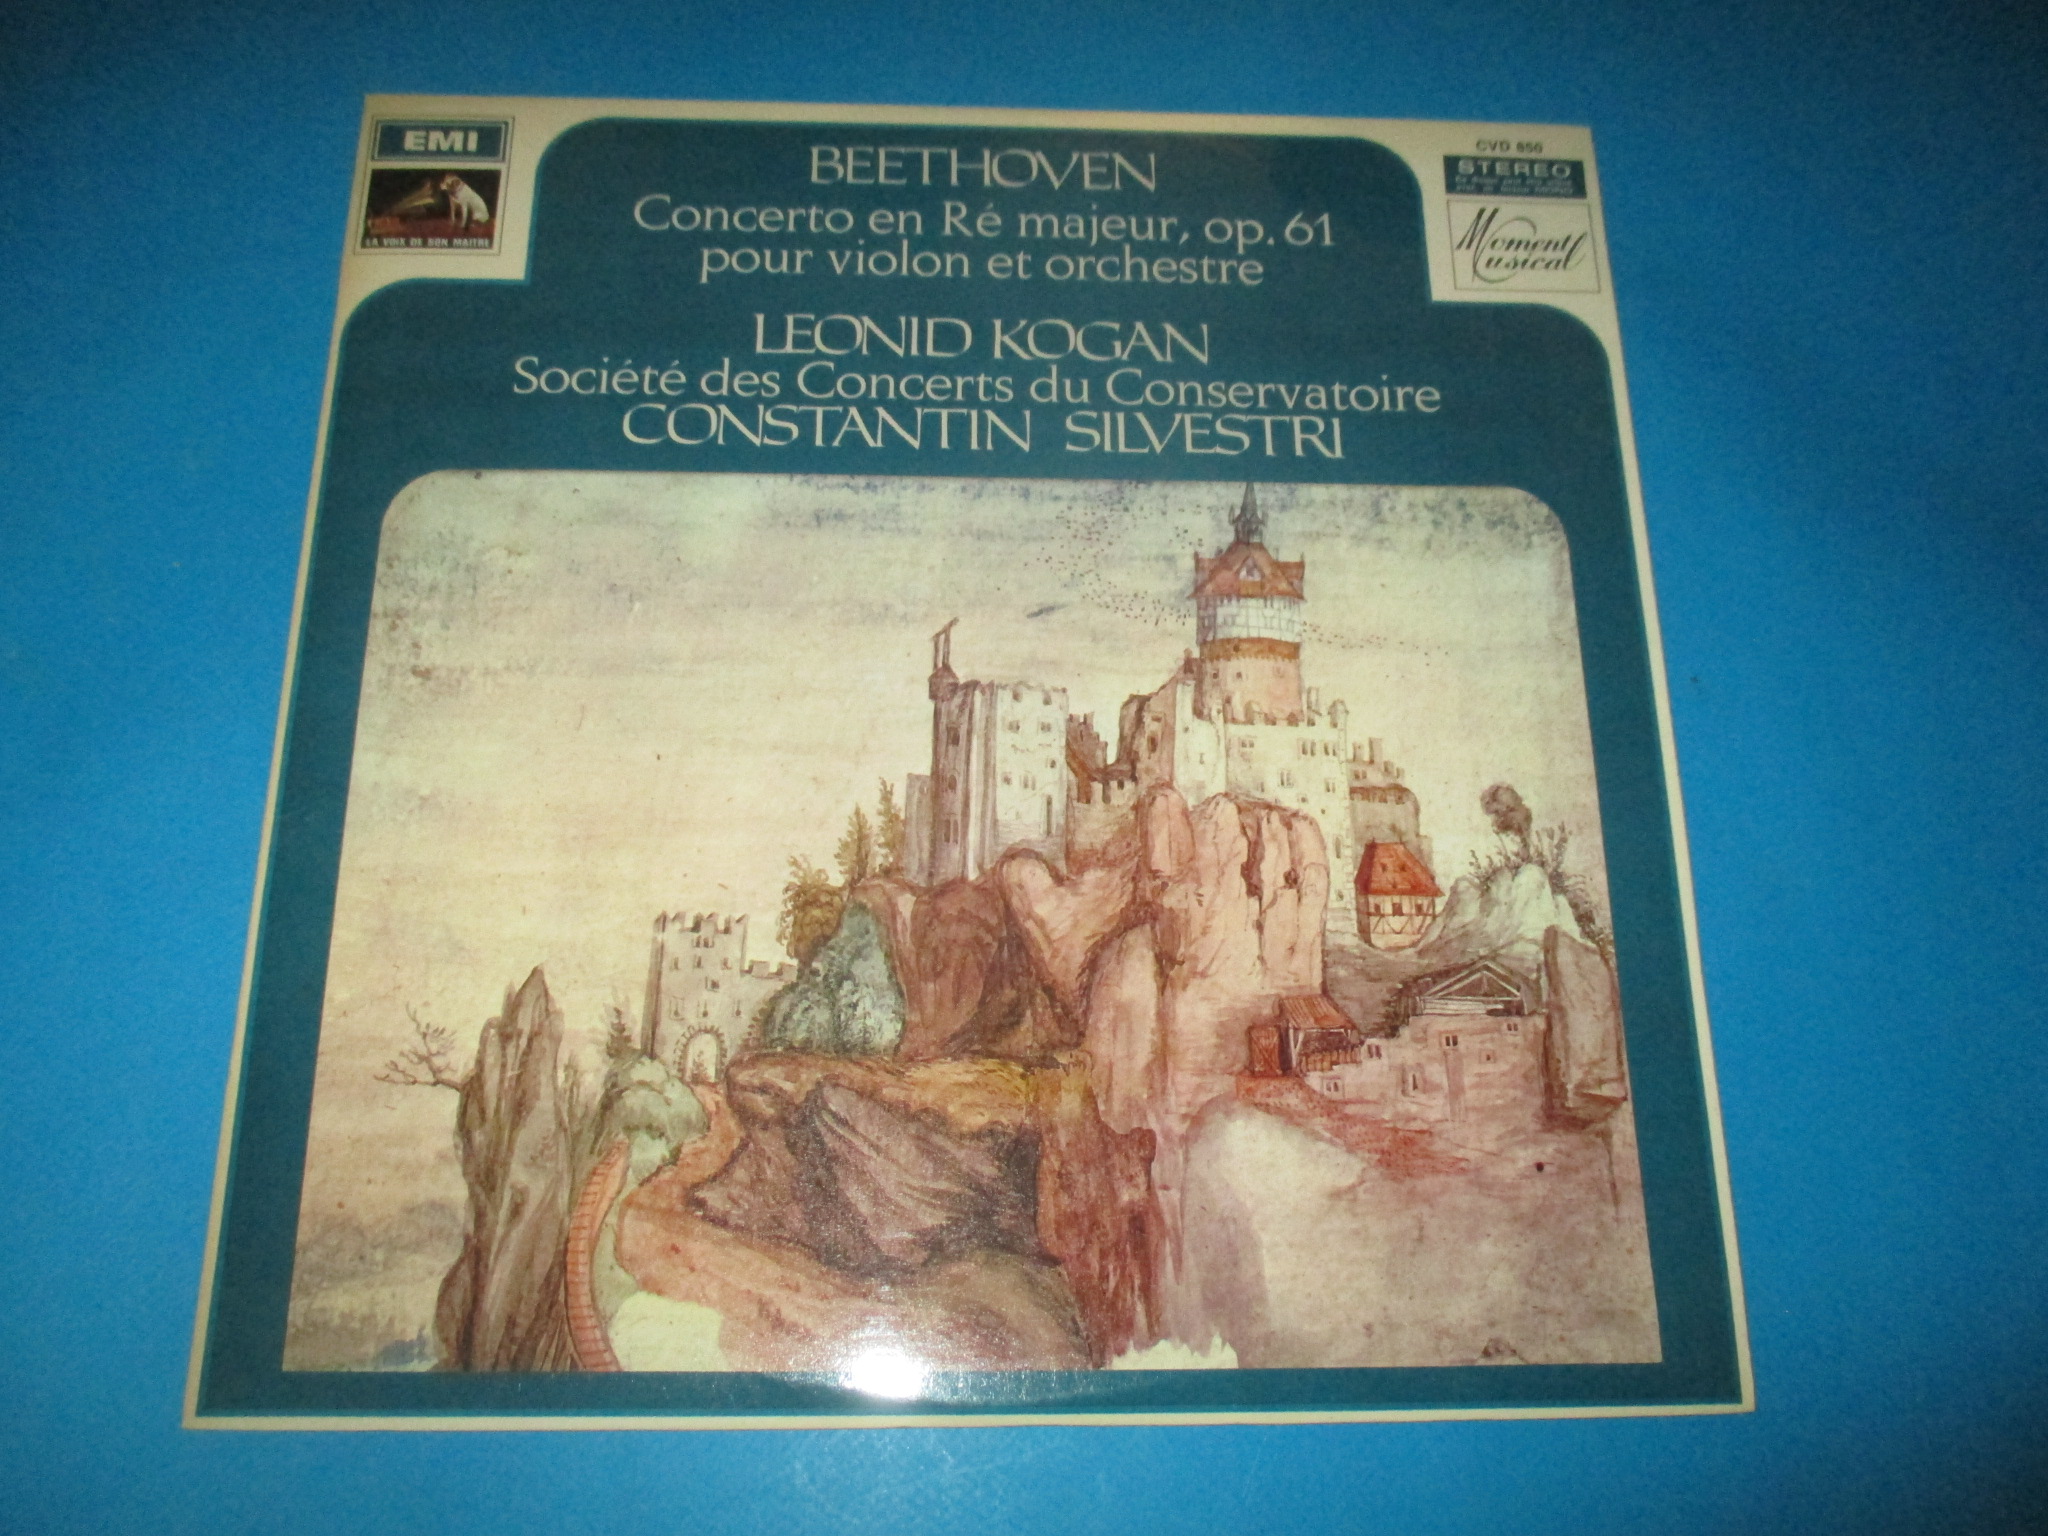 Disque Beethoven, Concerto en Ré majeur op 61 our violon et orchestre, Leonid Kogan, 33 tours EMI Voix de son Maître